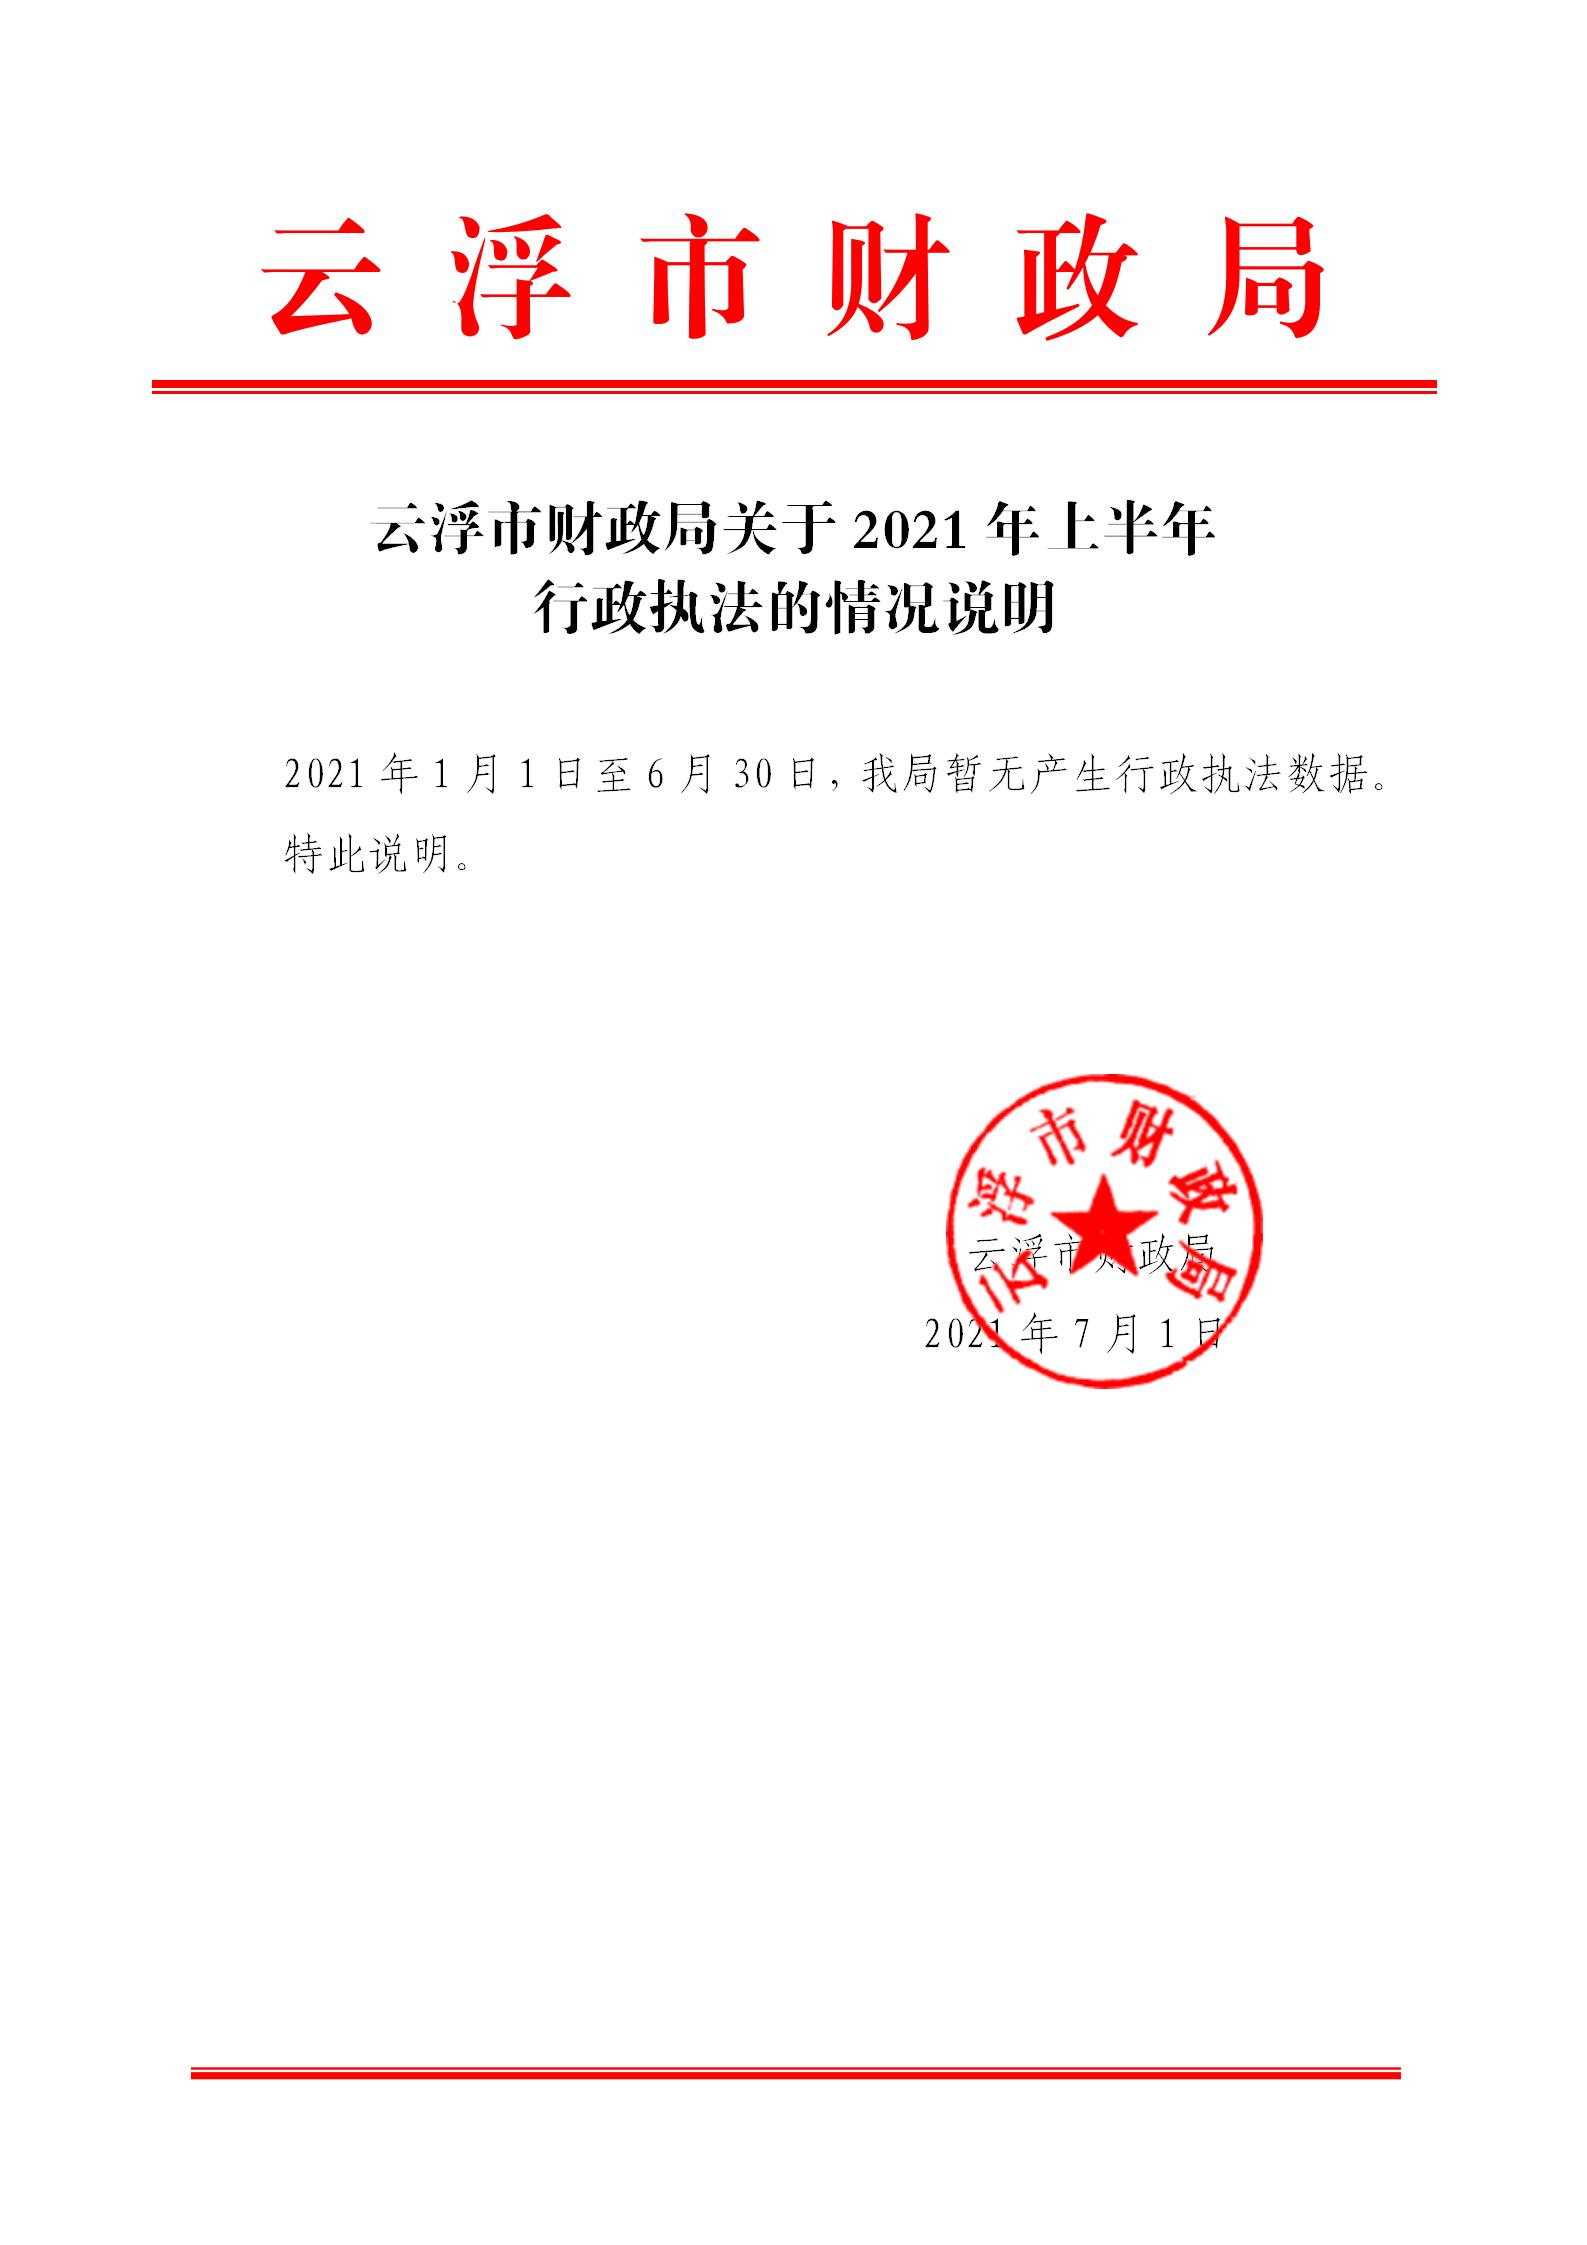 云浮市财政局关于2021年上半年行政执法的情况说明_01.jpg